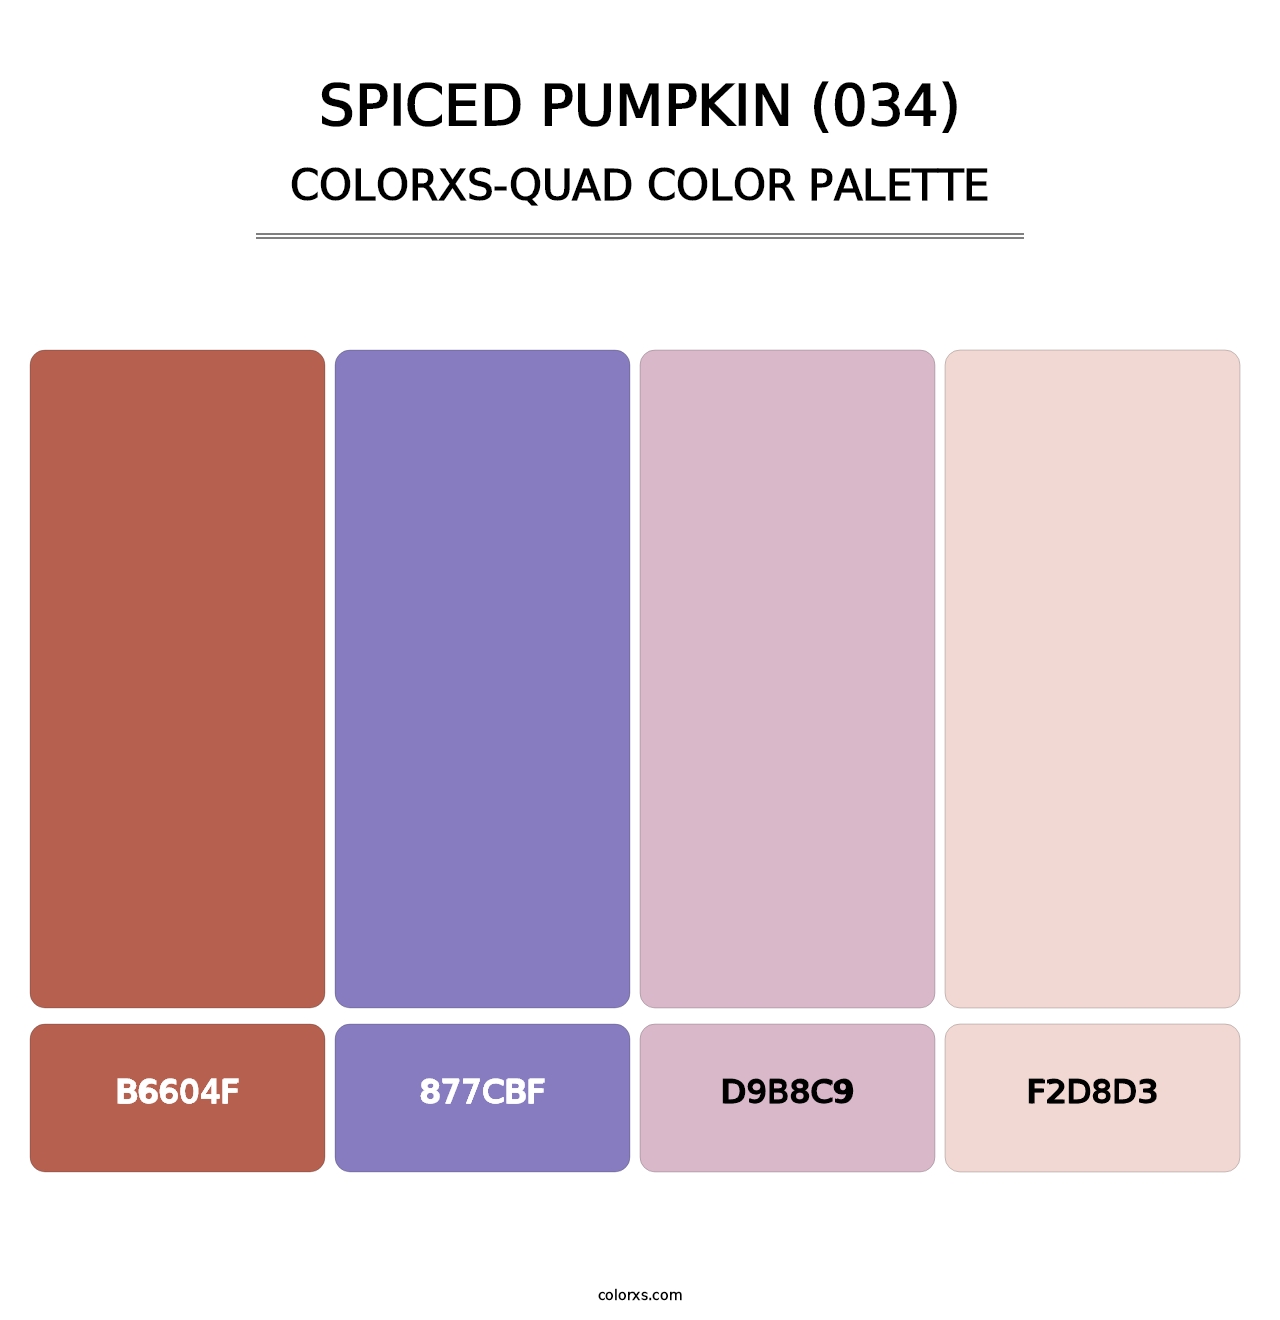 Spiced Pumpkin (034) - Colorxs Quad Palette